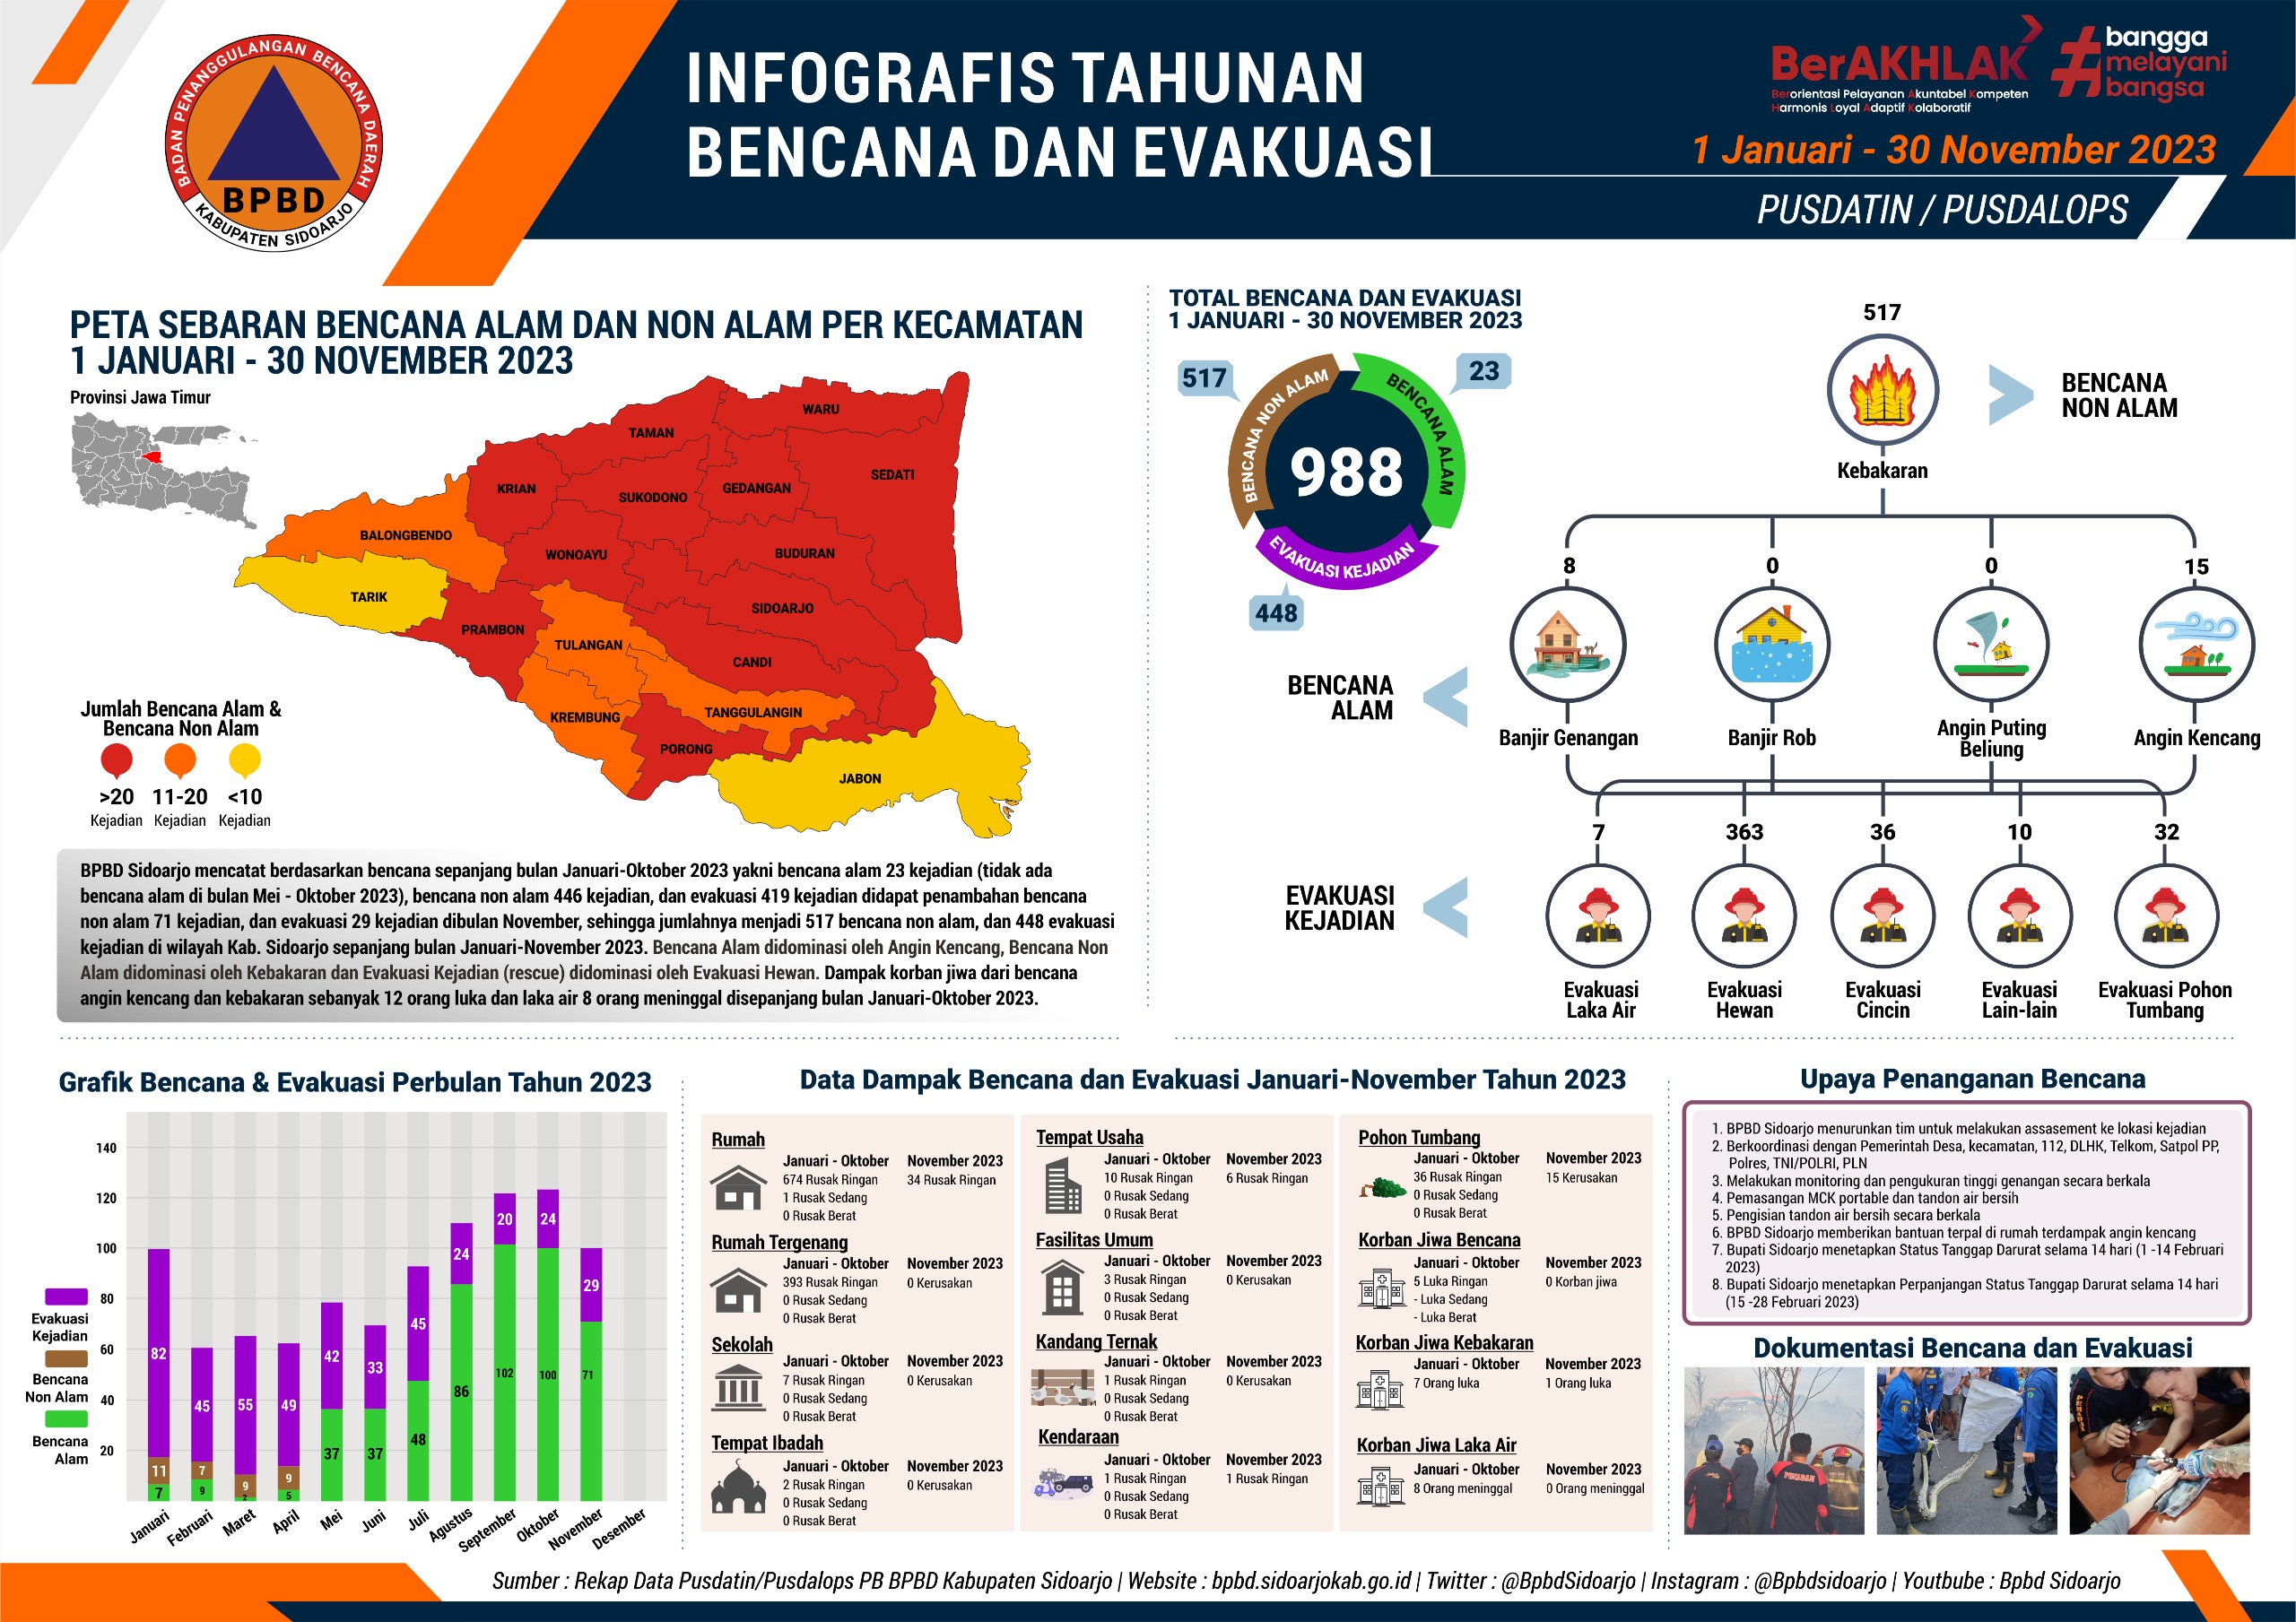 Infografis Tahunan Bencana dan Evakuasi Bulan Januari – November 2023